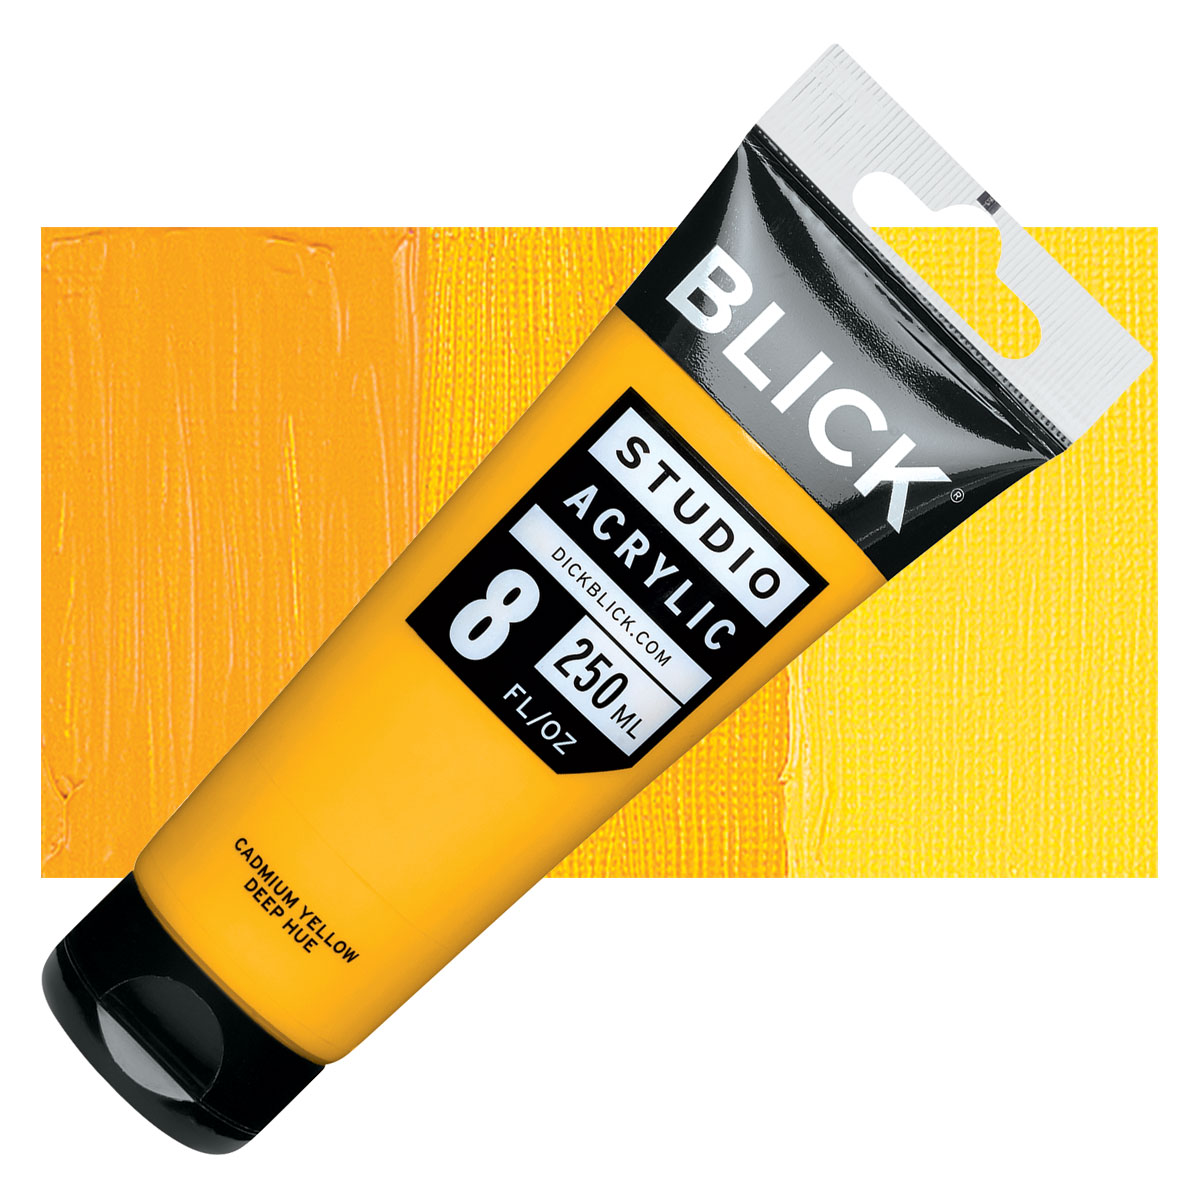 Blick Studio Acrylics - Yellow Oxide, 4 oz tube